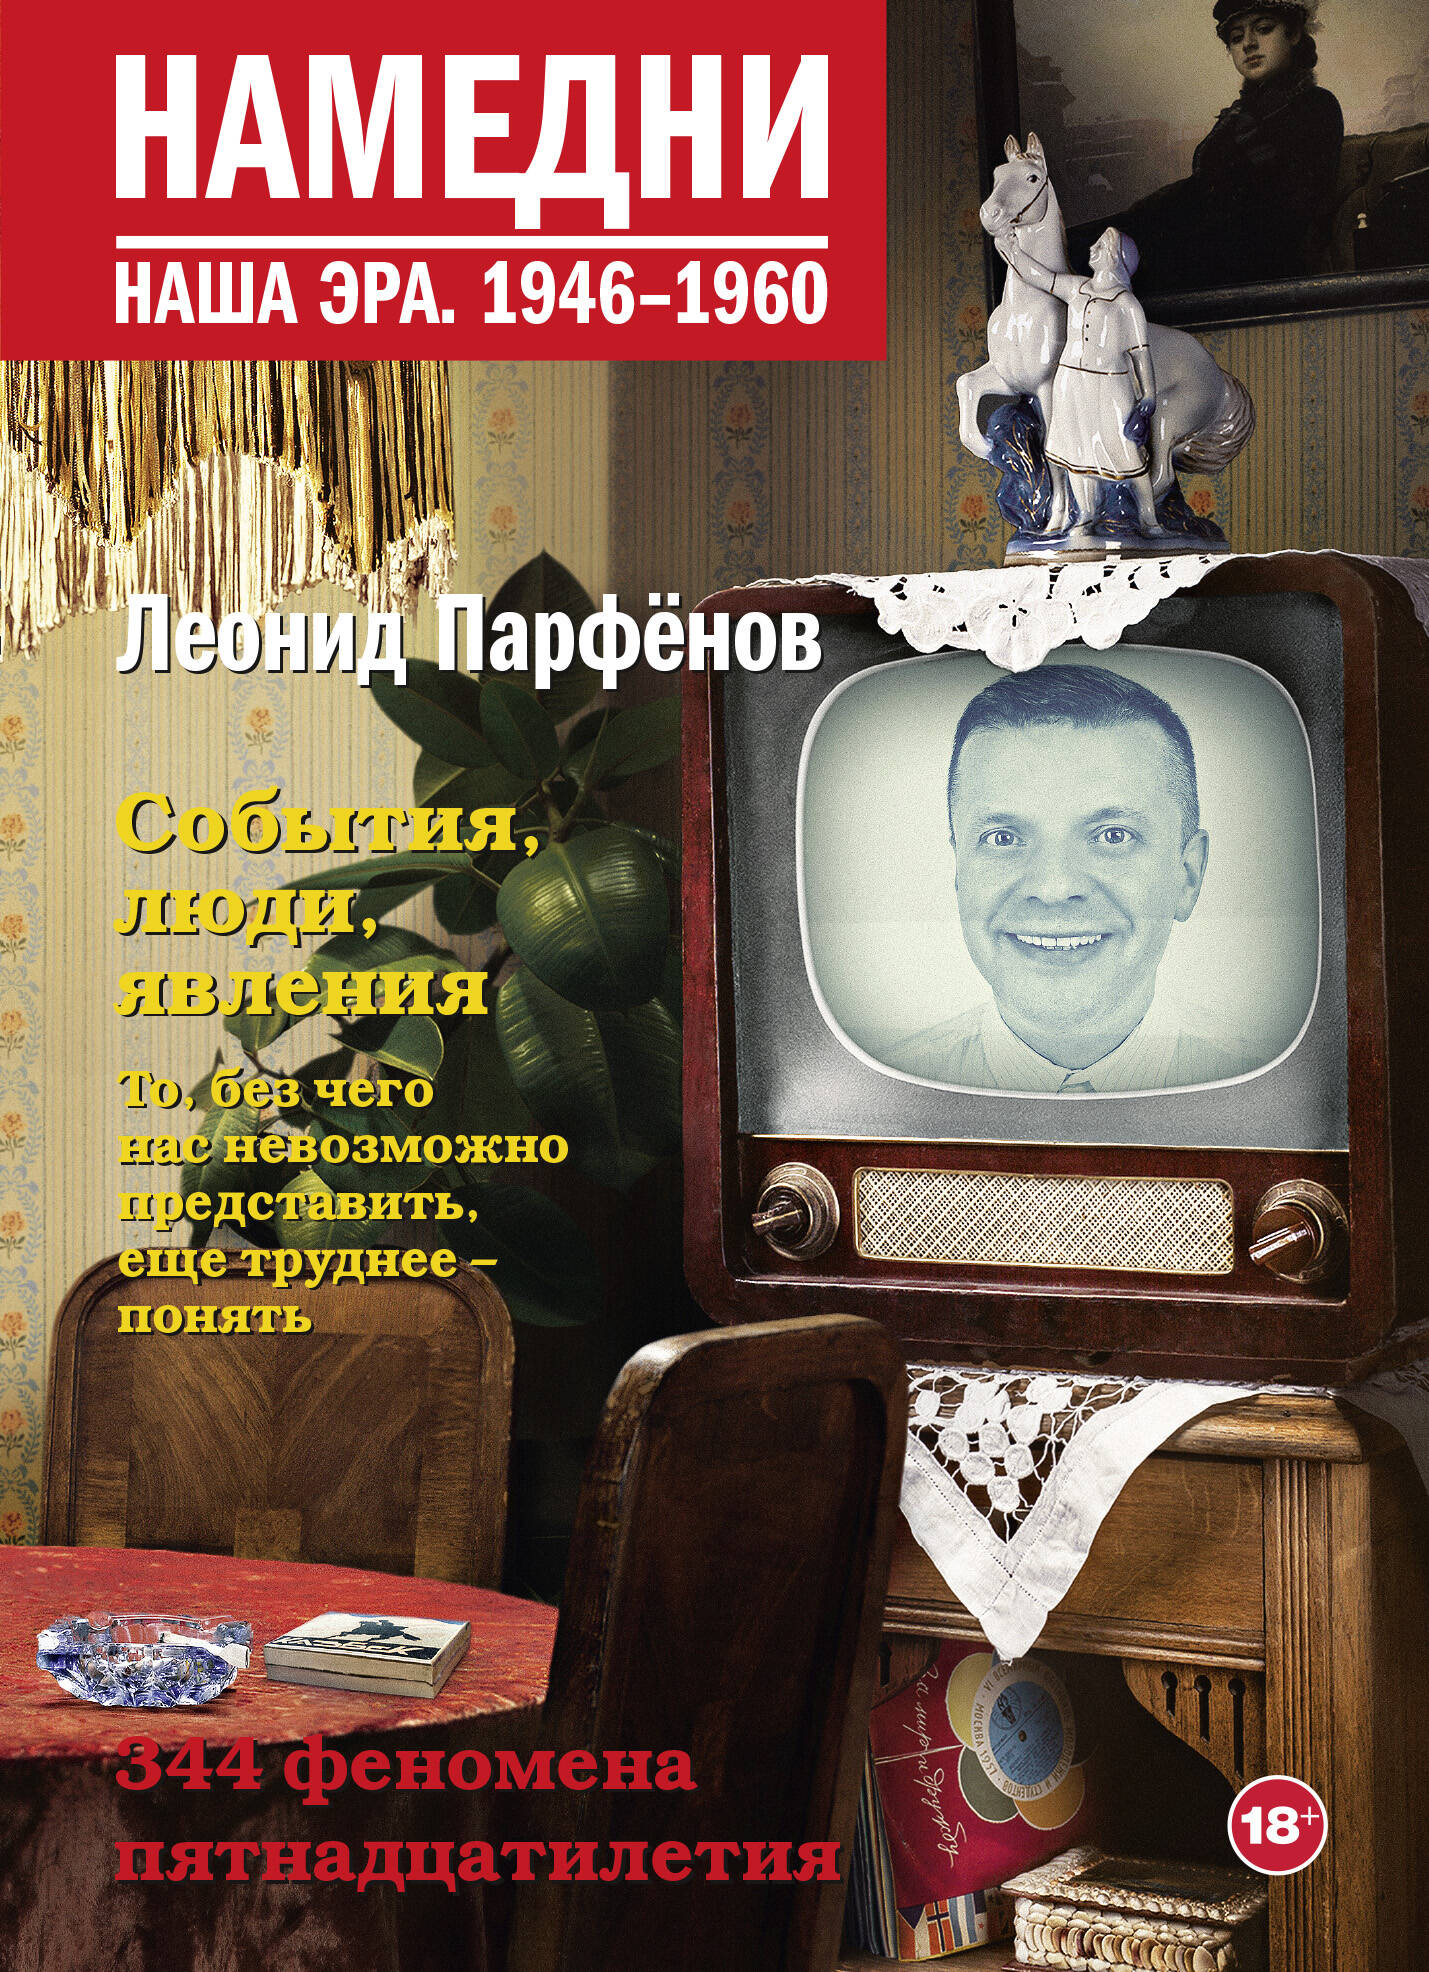 Парфенов Леонид Геннадьевич Намедни. Наша эра. 1946-1960 - страница 0